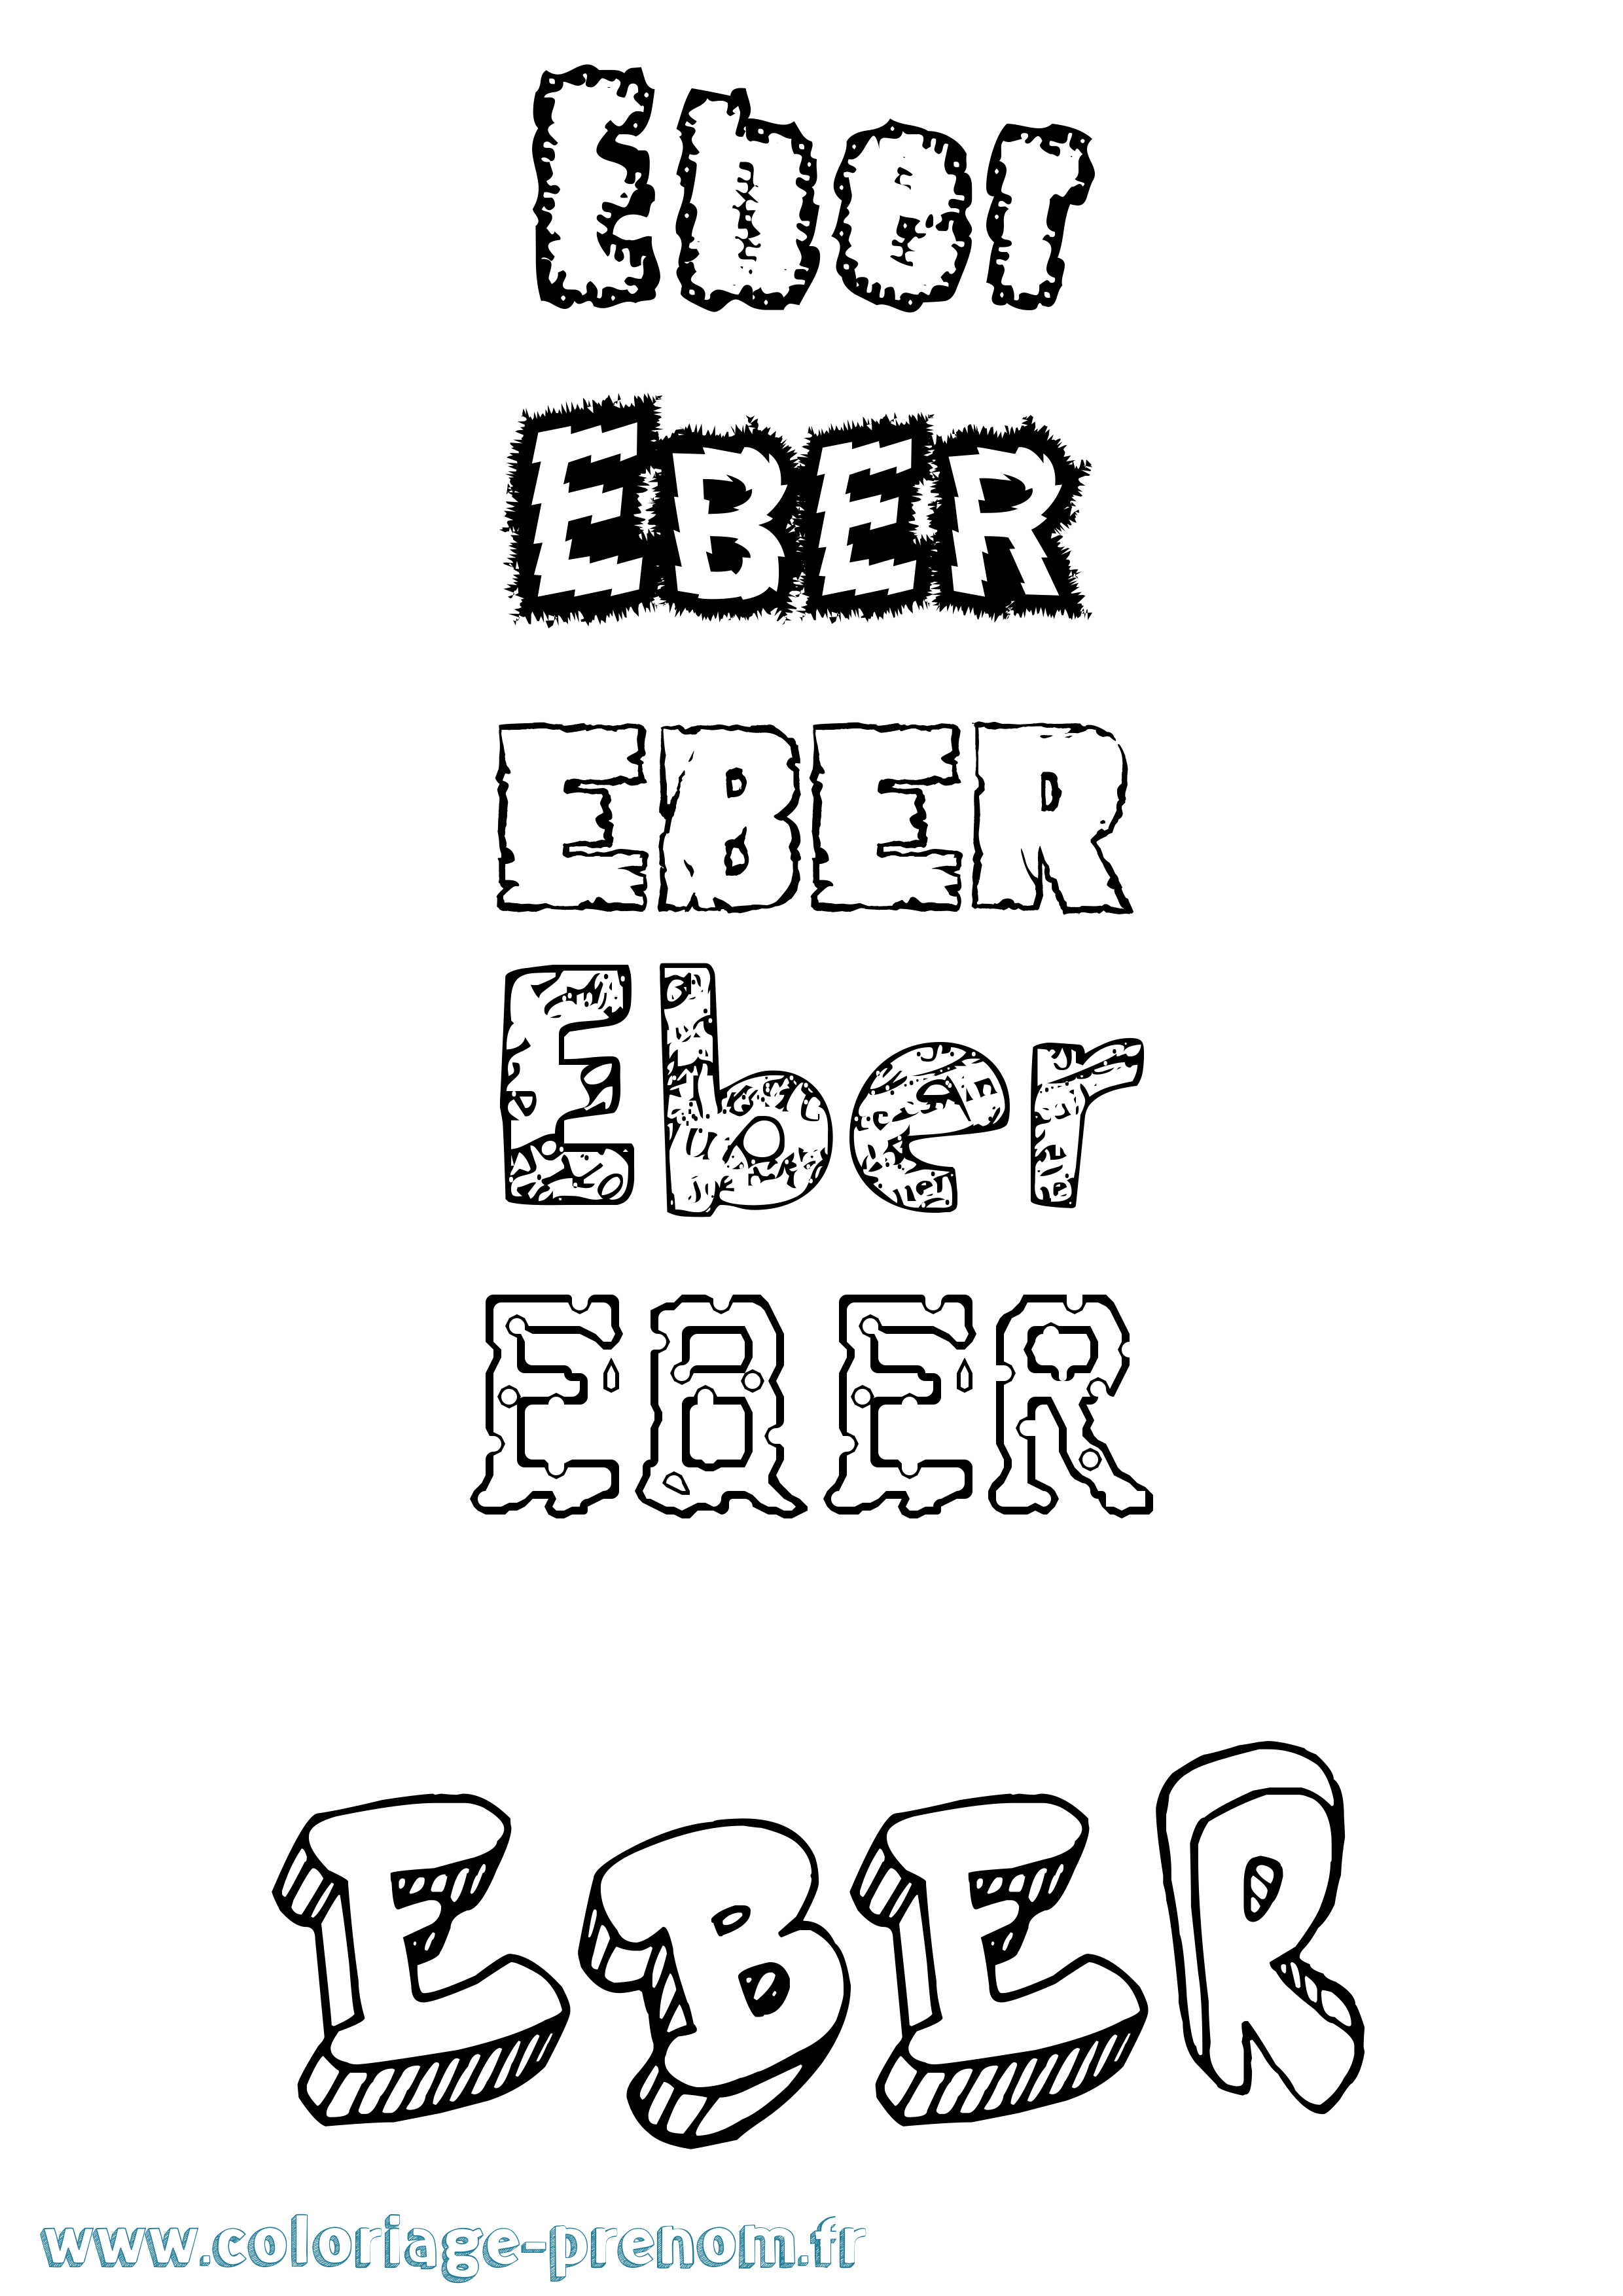 Coloriage prénom Eber Destructuré